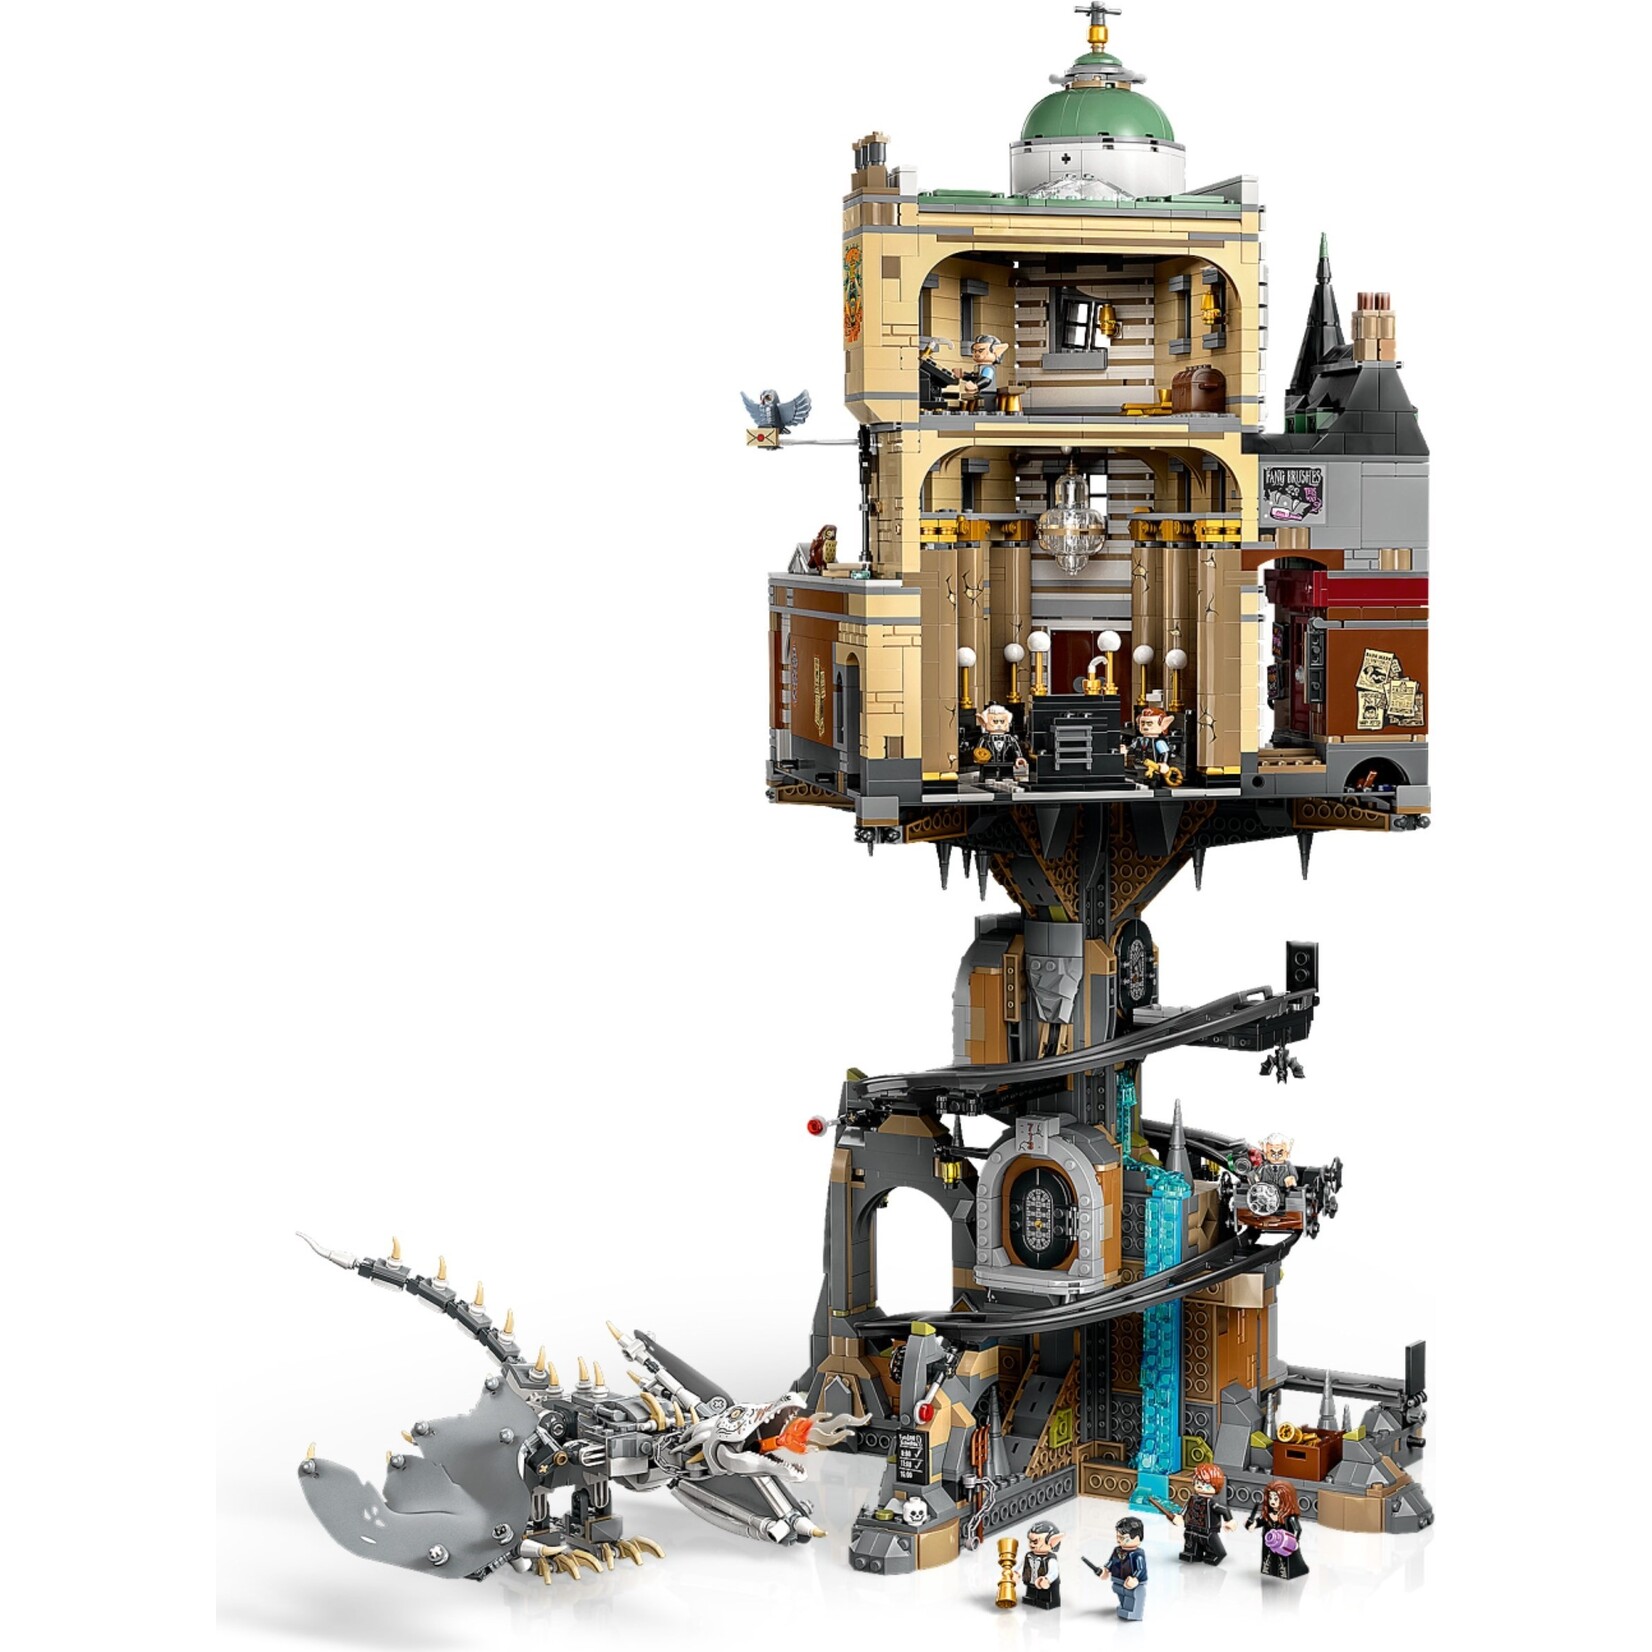 LEGO Goudgrijp™ Tovenaarsbank – Verzameleditie -76417